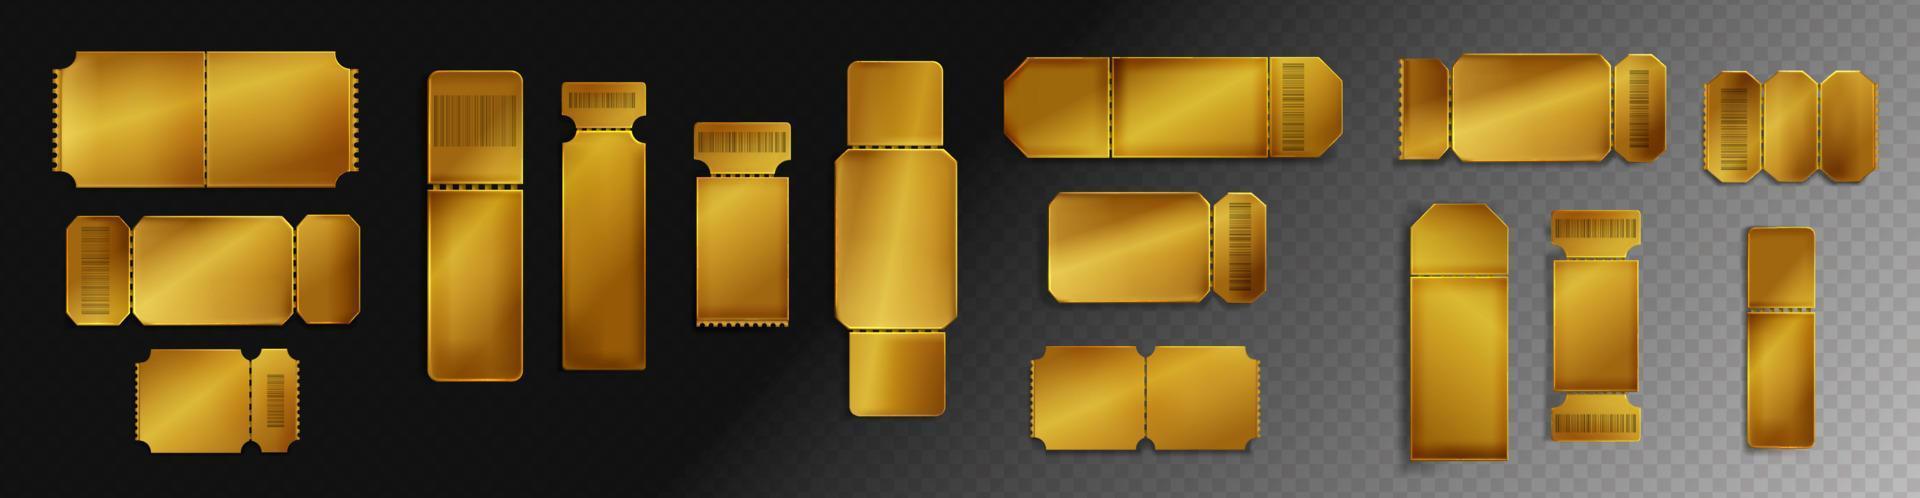 maquete de bilhetes dourados em branco com vetor de código de barras